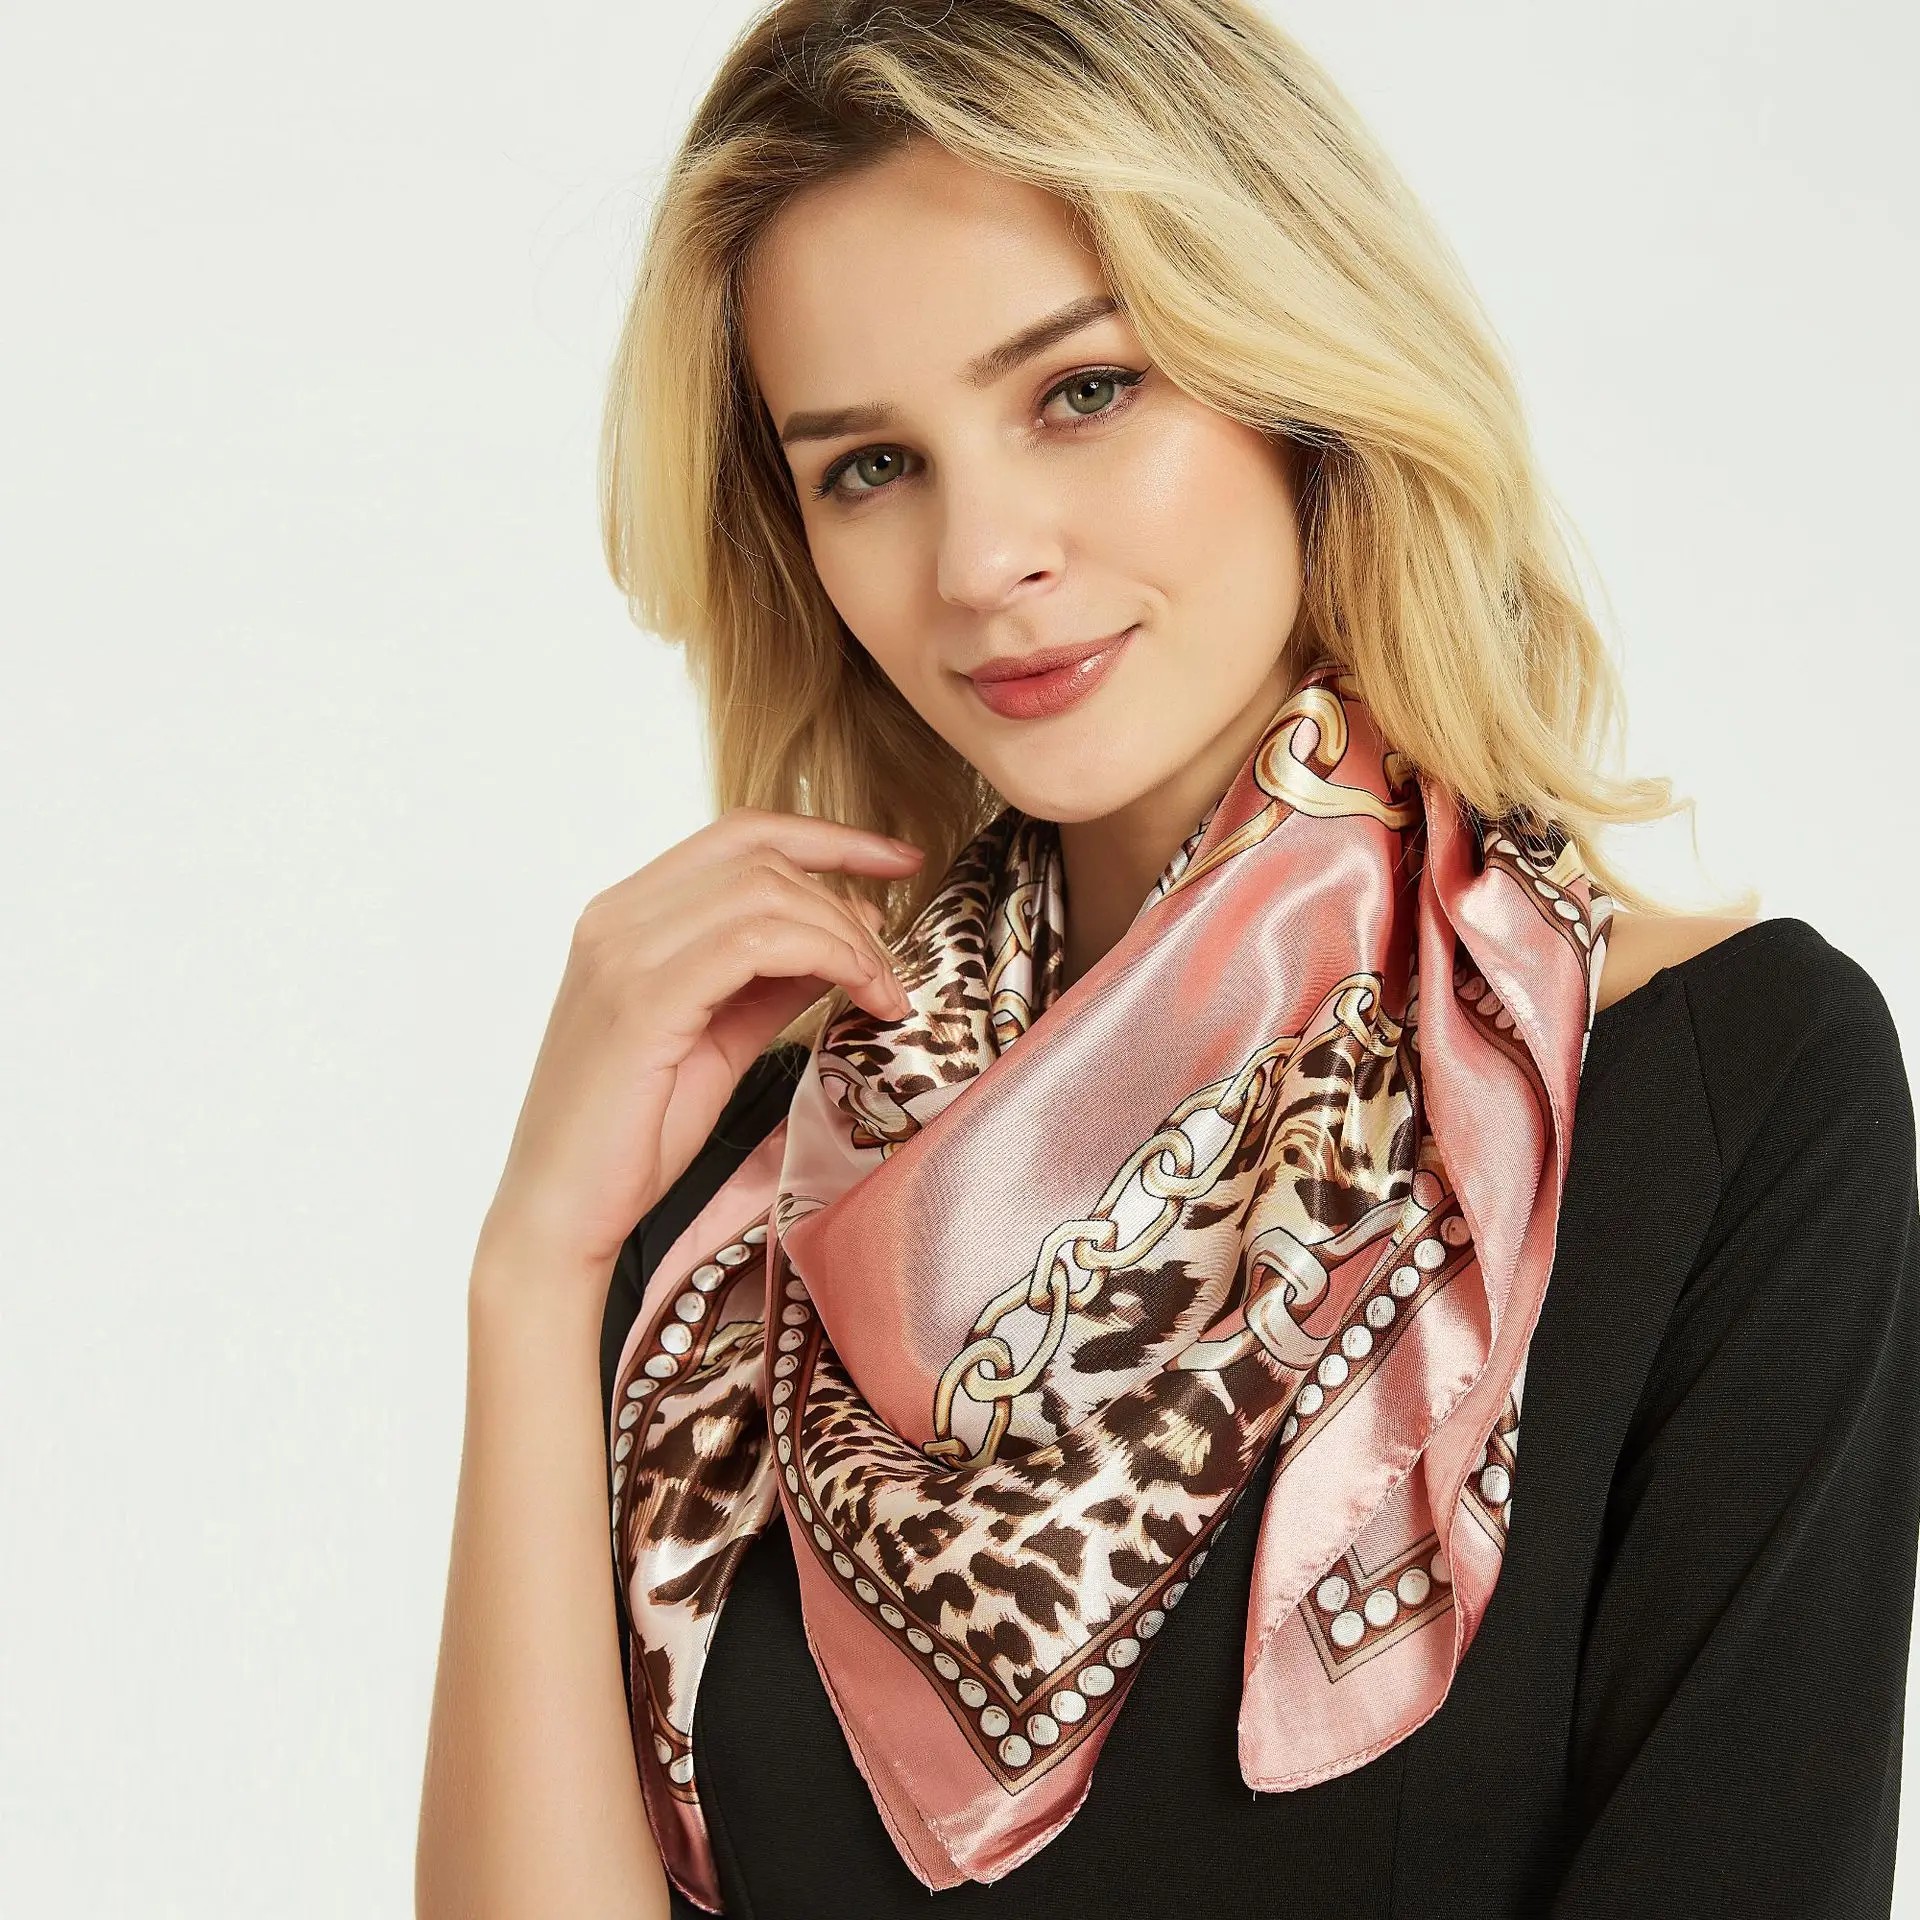 

2021 новый стиль шелковый шарф для женщин 100% натуральный шелк атлас квадратный цветной принт модный Шелковый шарф большая шаль Свадебный рос...